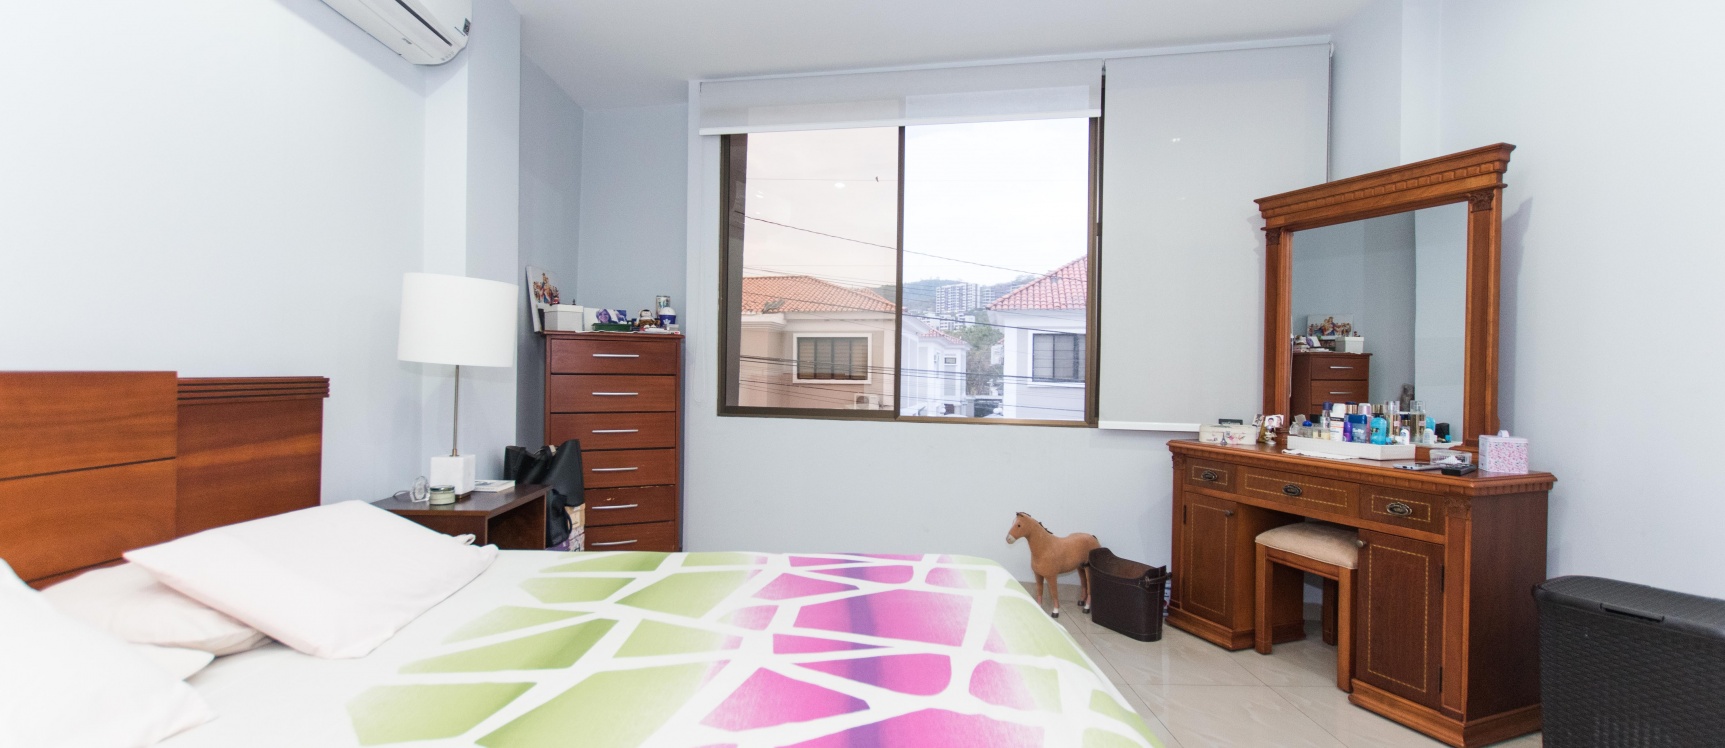 GeoBienes - Departamento en venta ubicado en la Urbanización Puerto Azul, Vía a la Costa  - Plusvalia Guayaquil Casas de venta y alquiler Inmobiliaria Ecuador